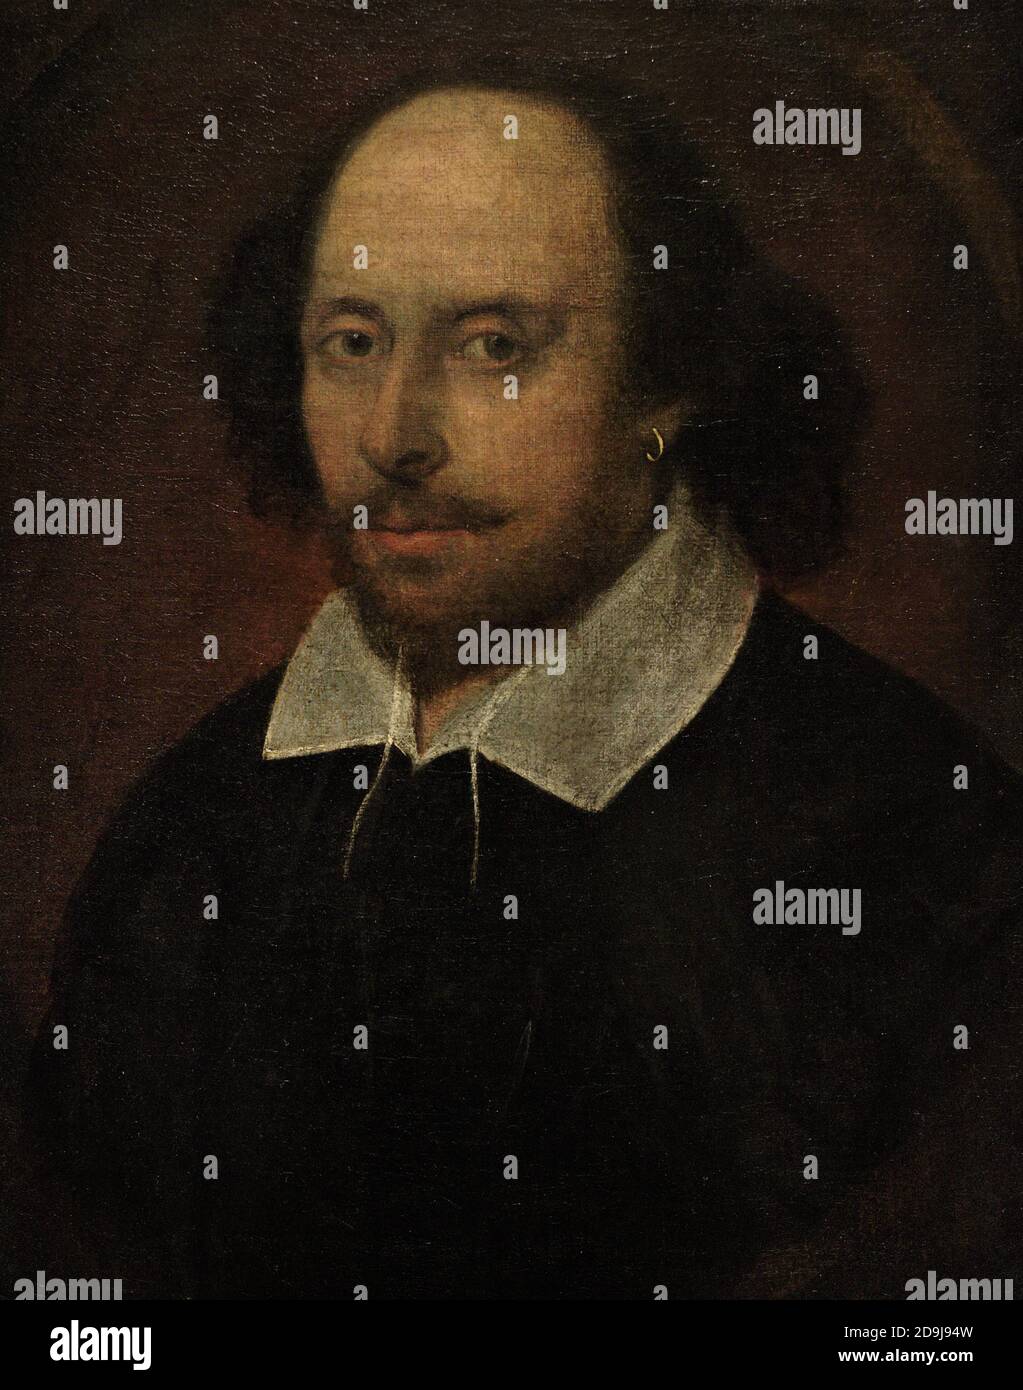 Le portrait de Chandos. Le portrait le plus célèbre qui dépeint William Shakespeare (1564-1616). Attribué à John Taylor. Huile sur toile (552 mm x 438 mm), c.1610. Galerie nationale de portraits. Londres, Angleterre, Royaume-Uni. Banque D'Images